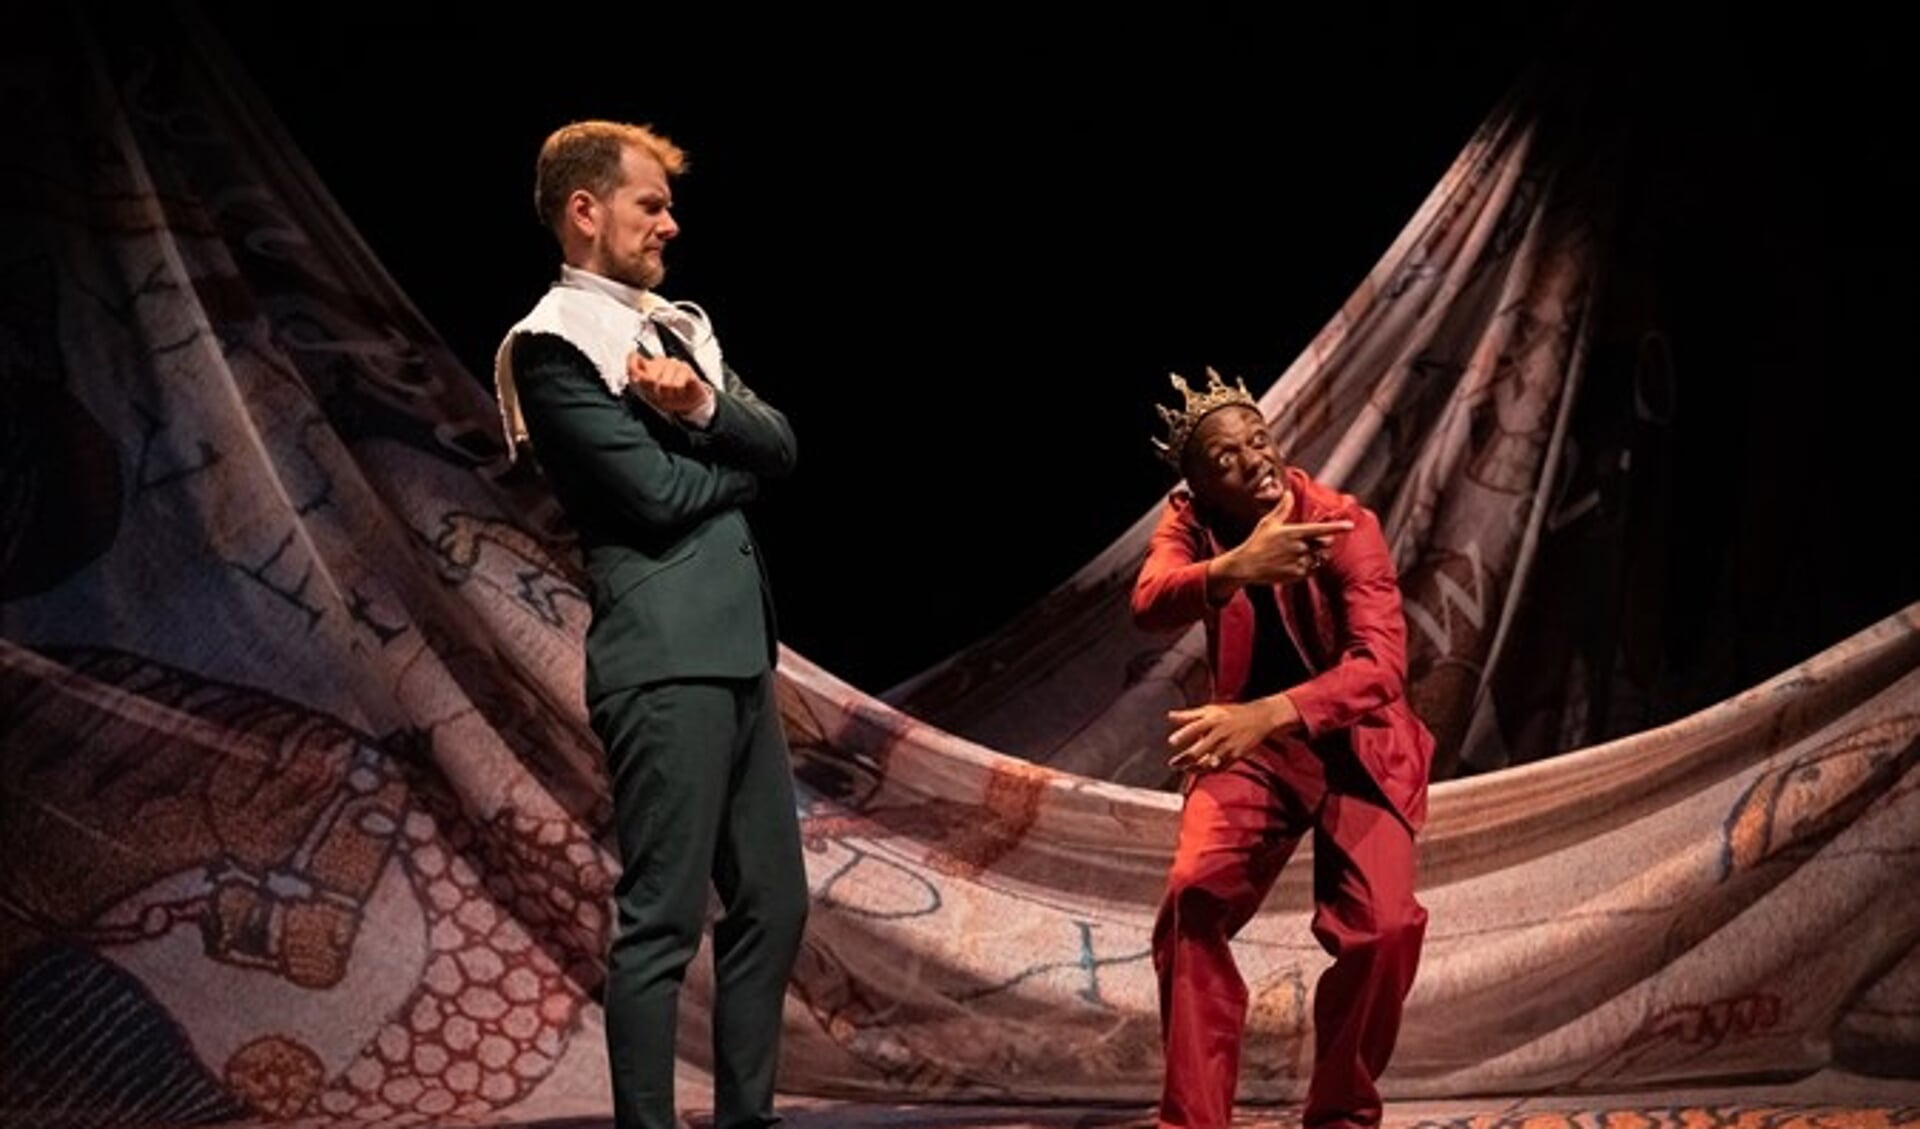 Goedemorgen Theaterproducties heeft het Shakespearestuk Richard III in een humoristisch en eigentijds jasje gestoken  